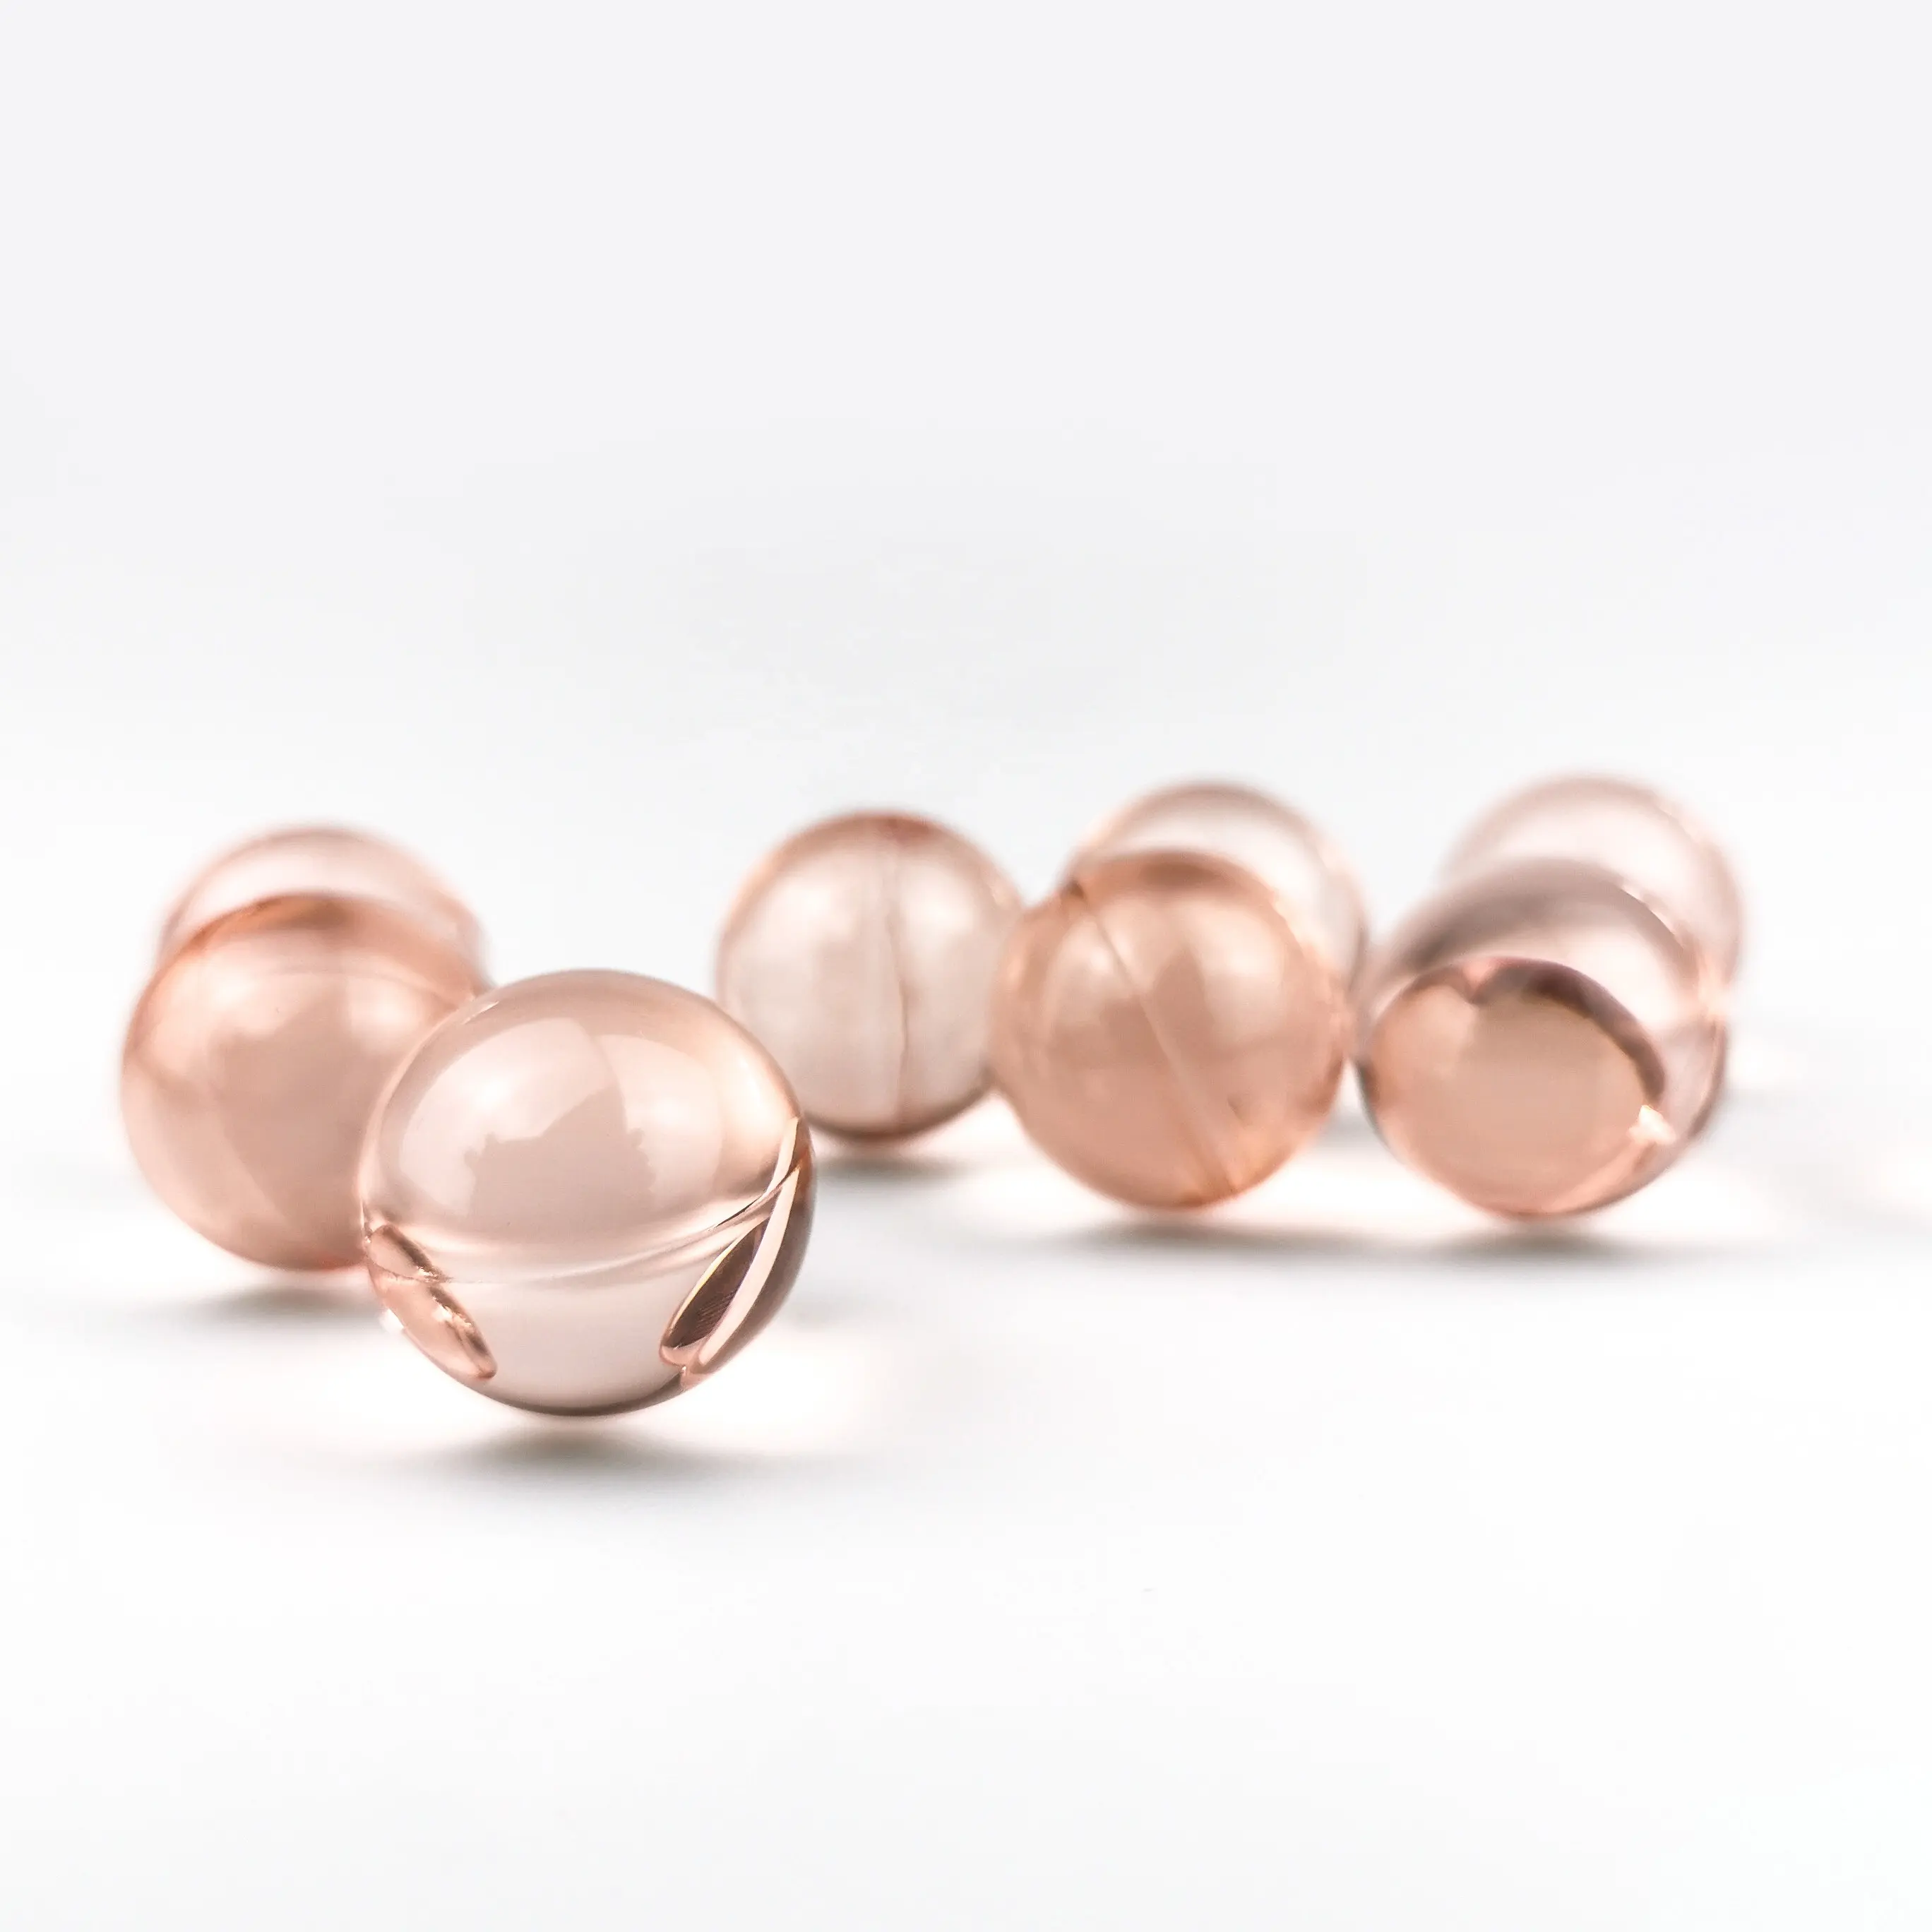 Bath pearls for Bath & Body Gift Sets